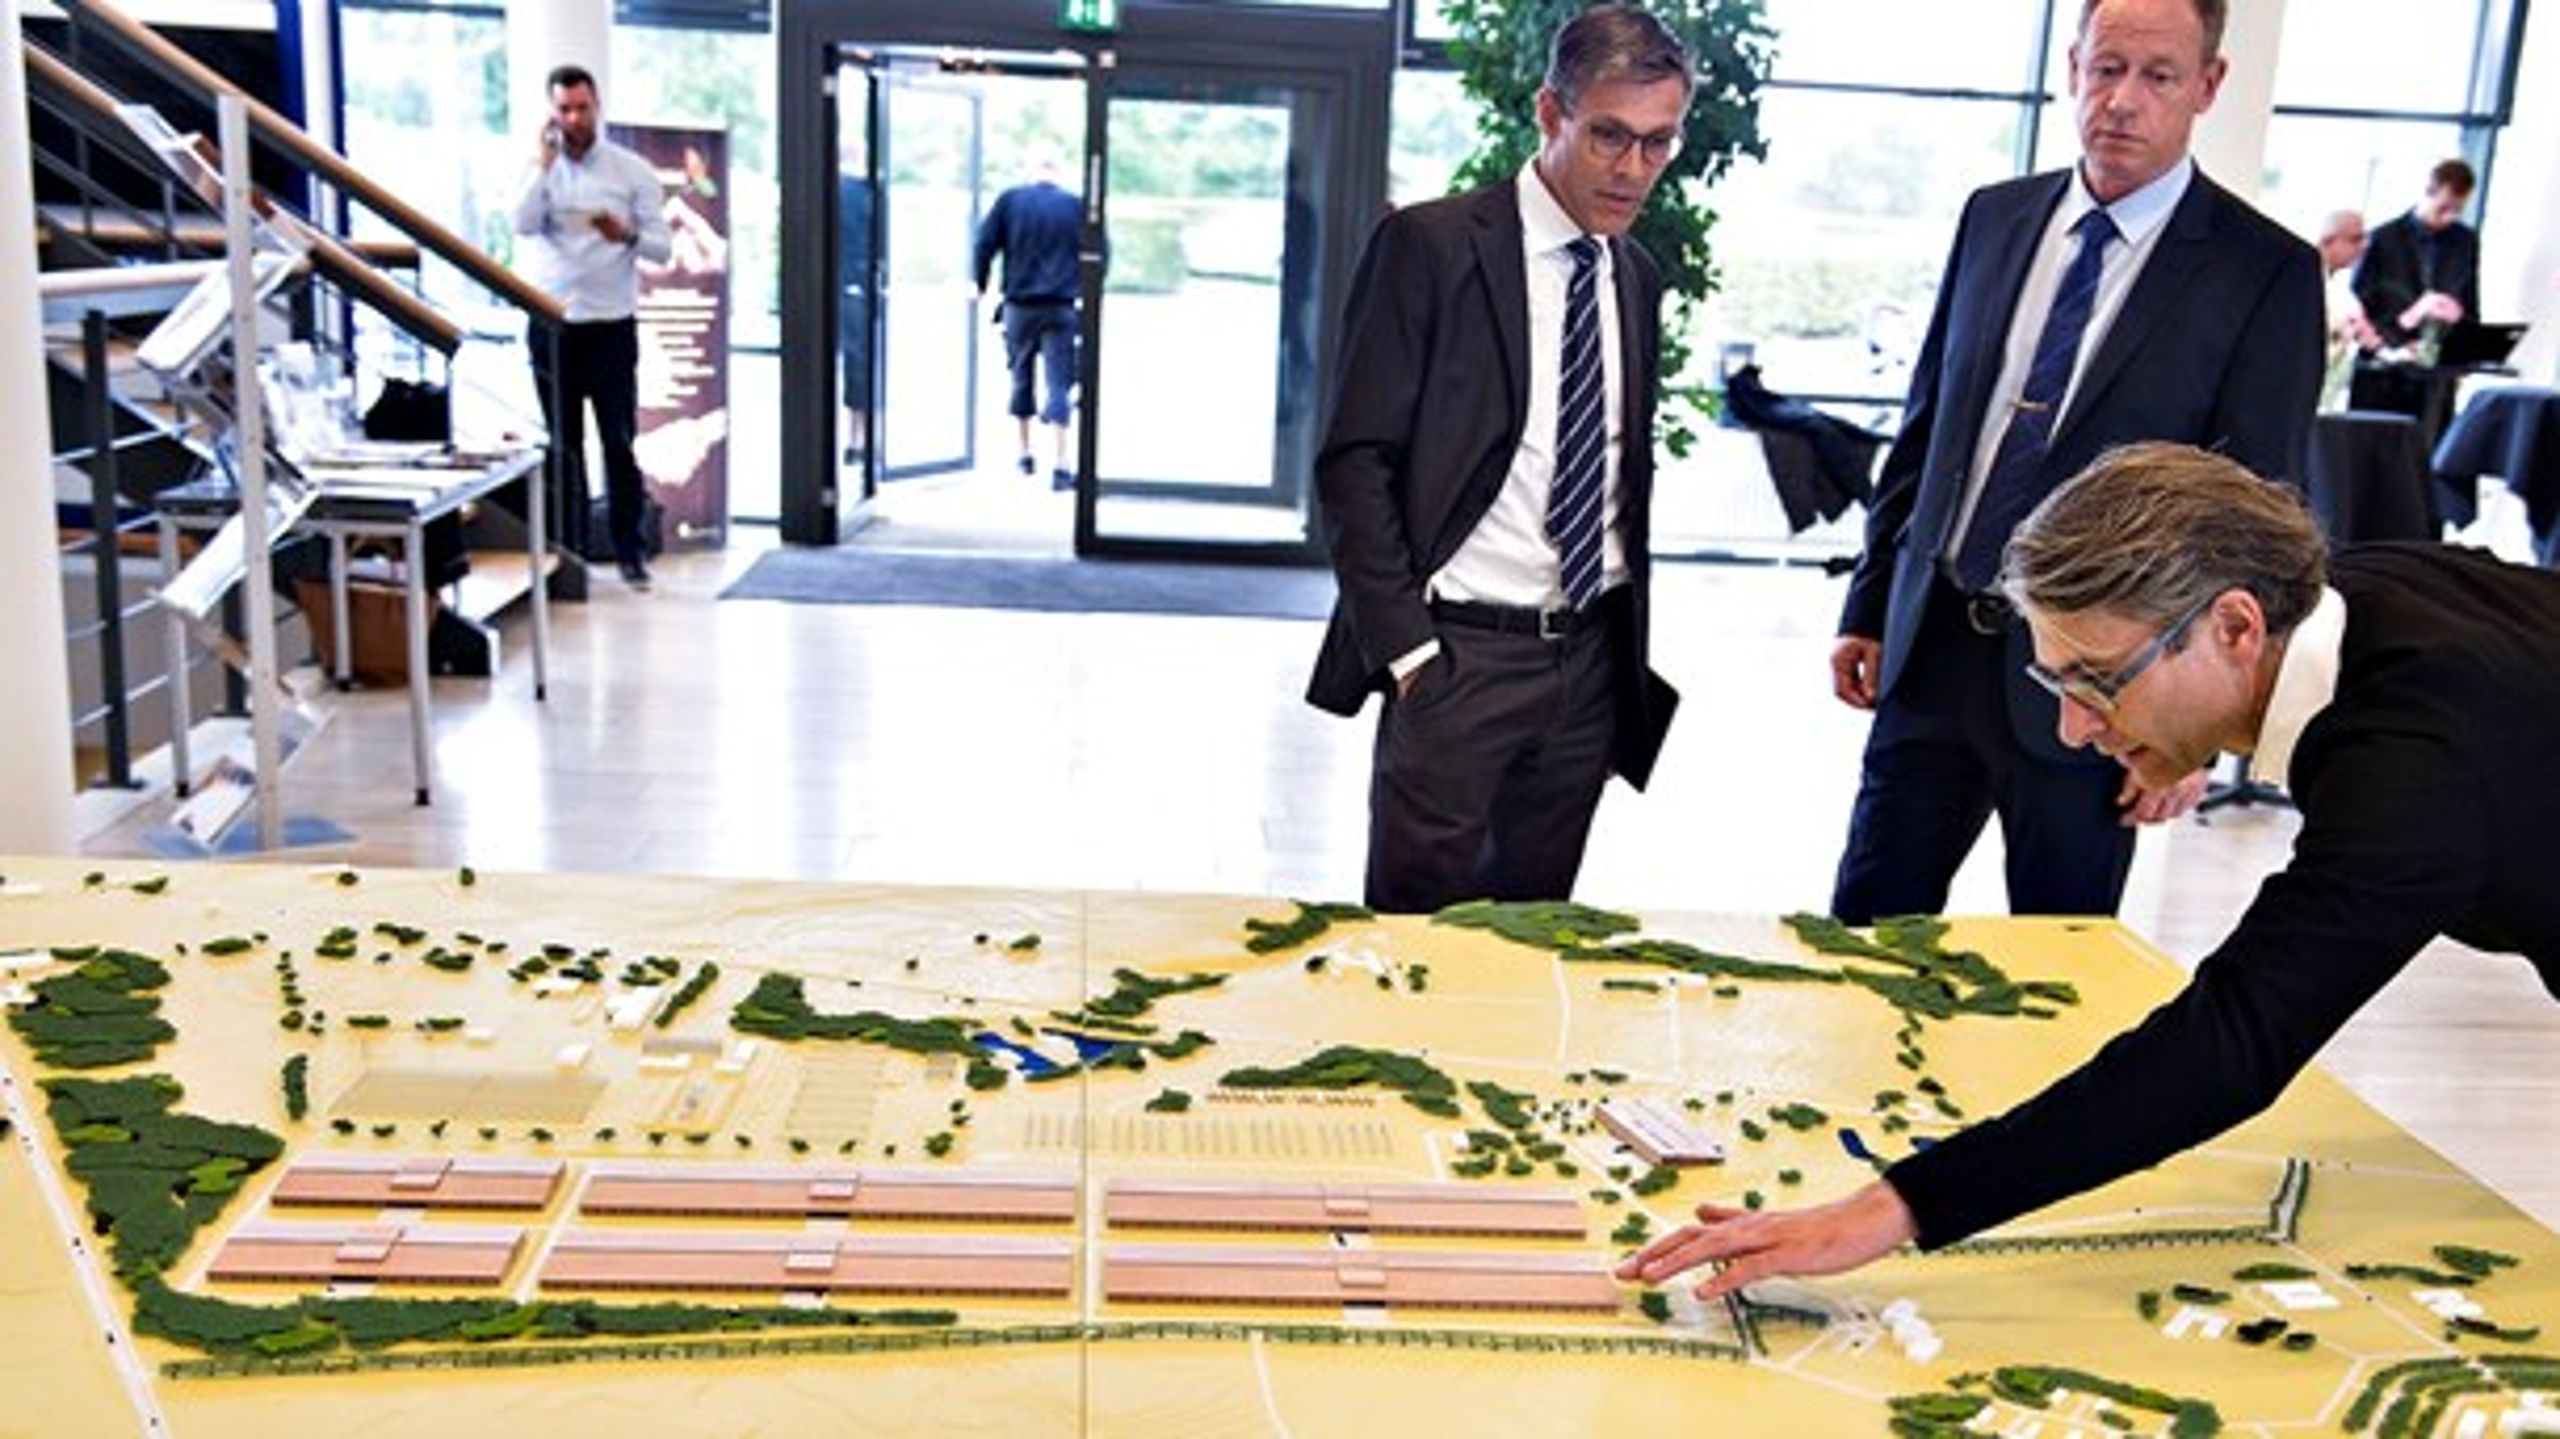 Det fik international omtale, da Apple og Viborg Kommune i 2015 kunne fortælle om planerne for et nyt stort datacenter i Foulum. Kommunens internationale erfaring havde ifølge kommunen selv banet vejen.